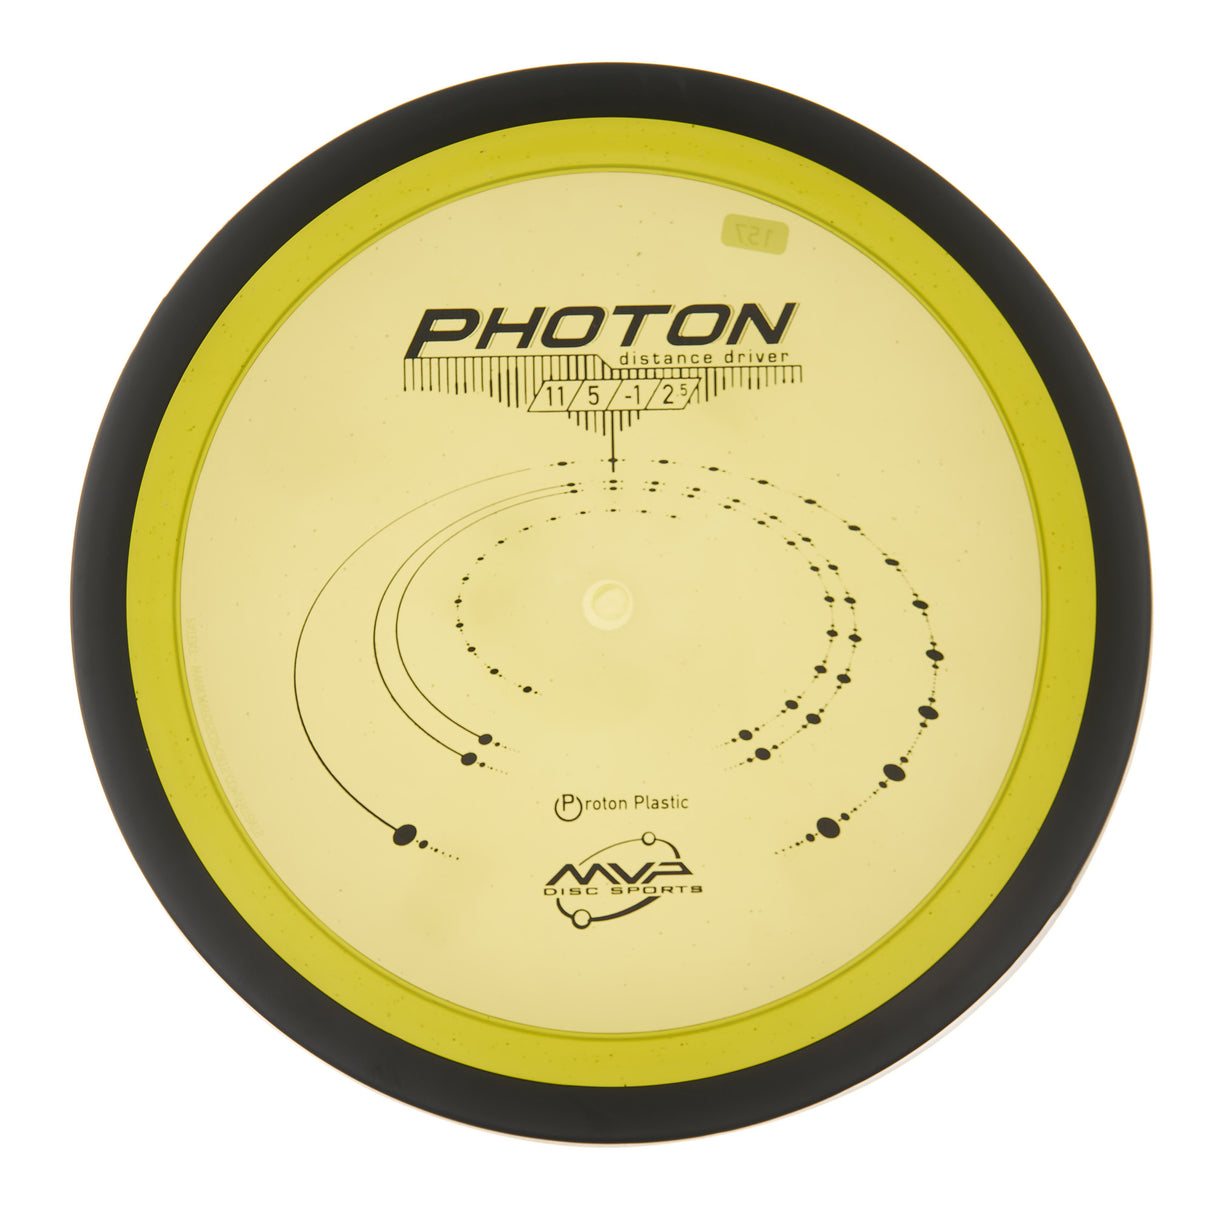 MVP Photon - Proton 158g | Style 0004